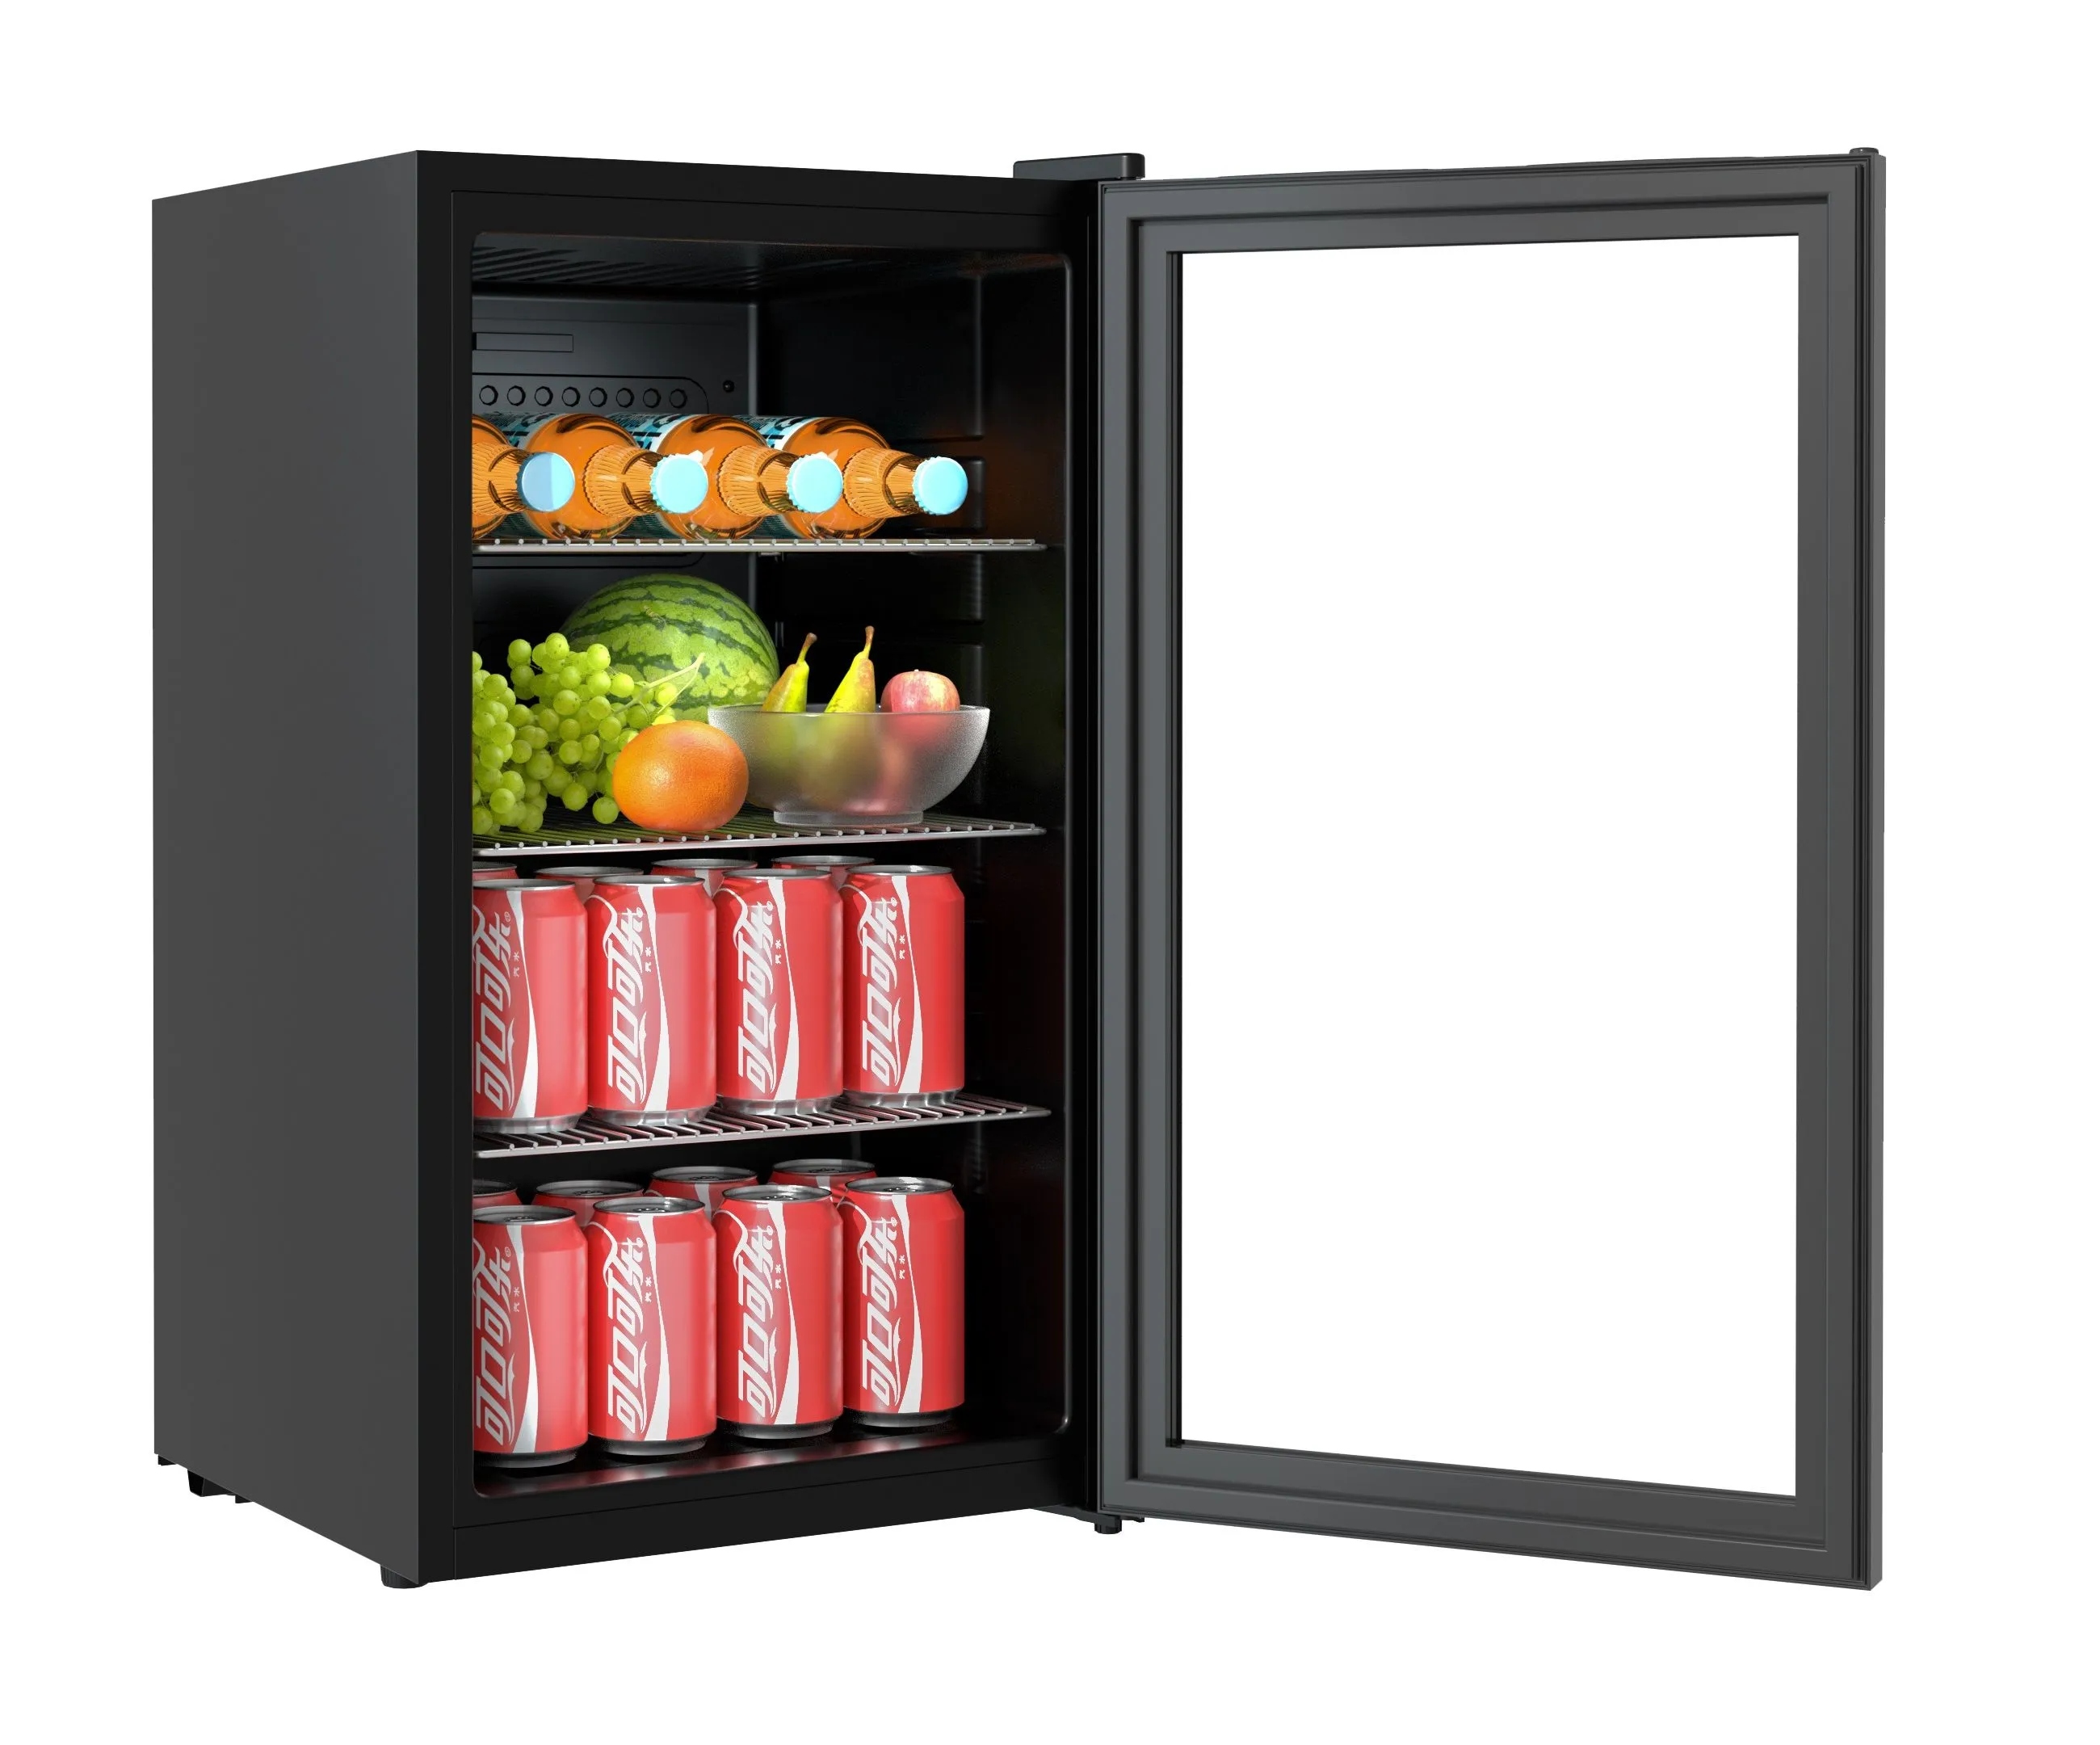 CombiSteel Refrigerator Countertop Model 80L